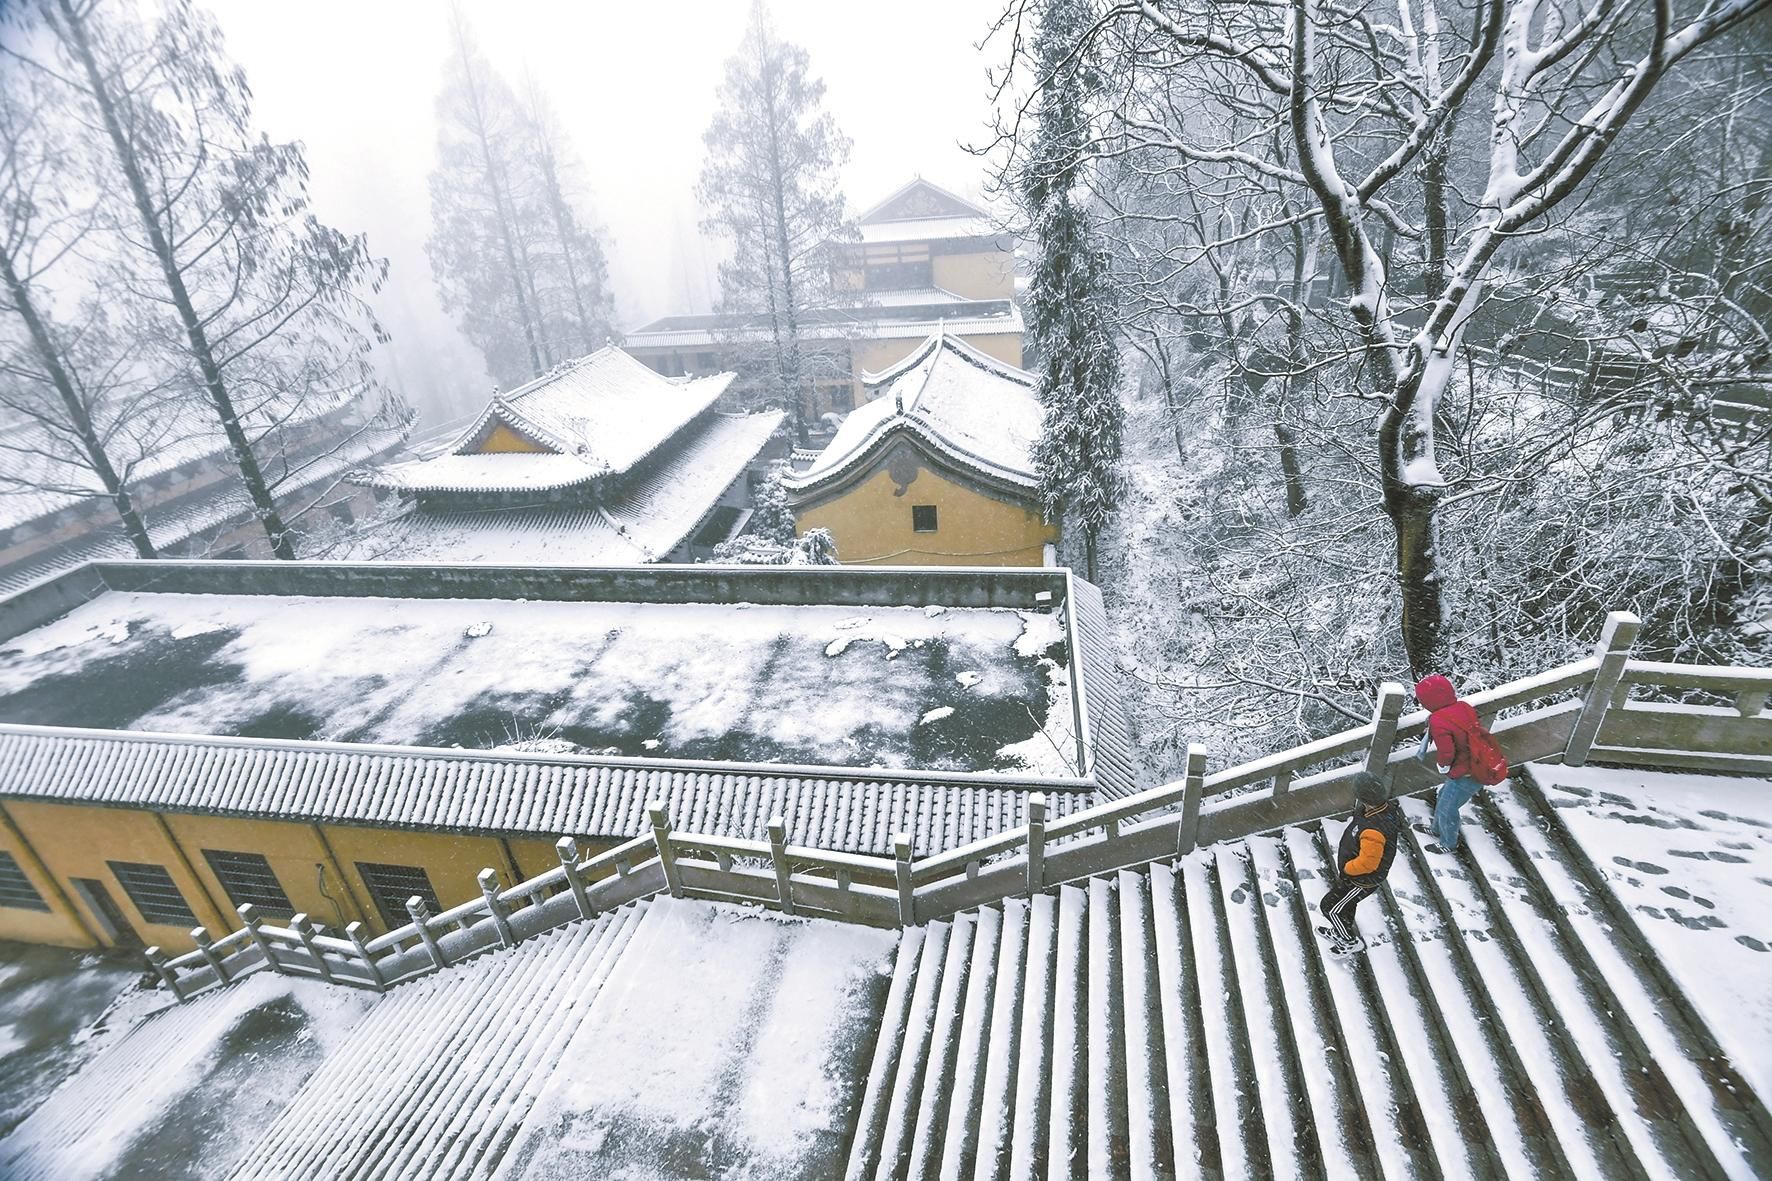 大雪横飞舞江城 放晴三天迎新年